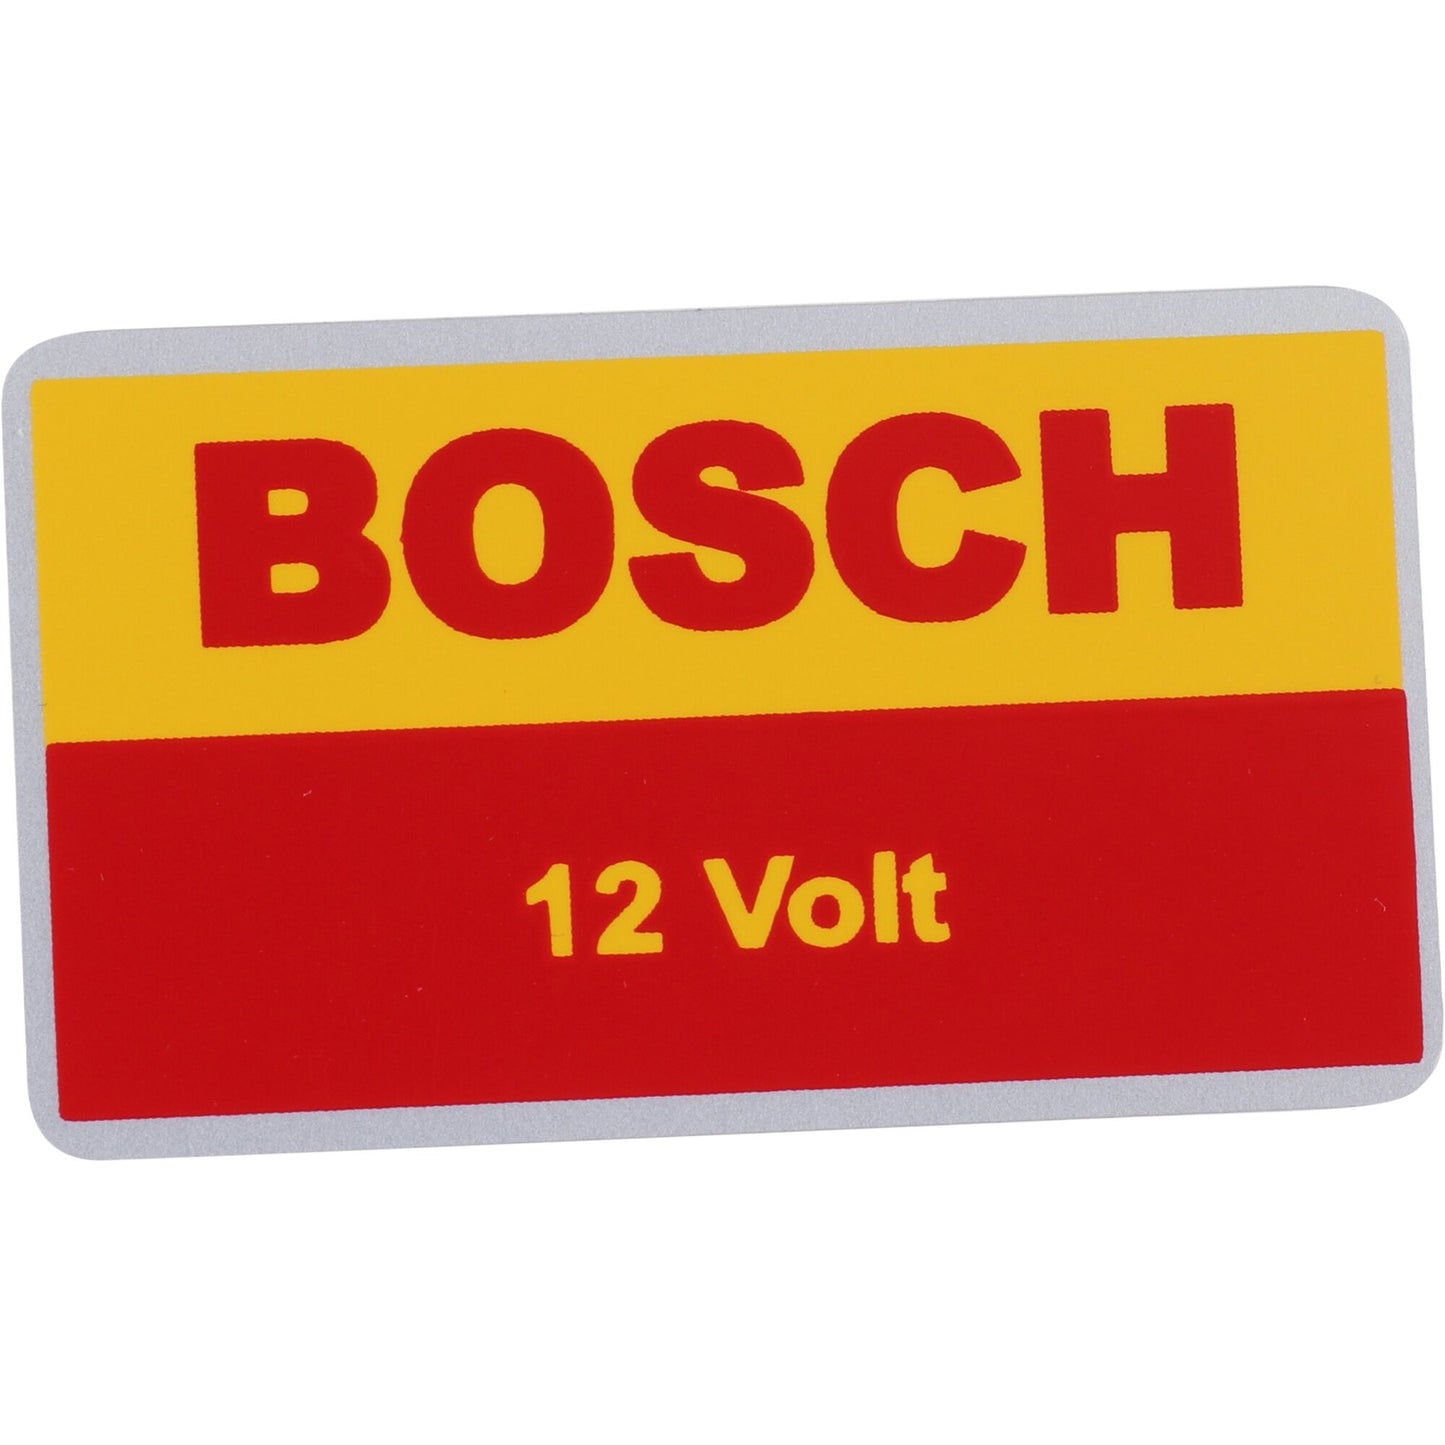 Sticker, "Bosch 12 Volt", Yellow & Red, 356C (64-65), 912 (65-69), 914 (70-76) - Sierra Madre Collection